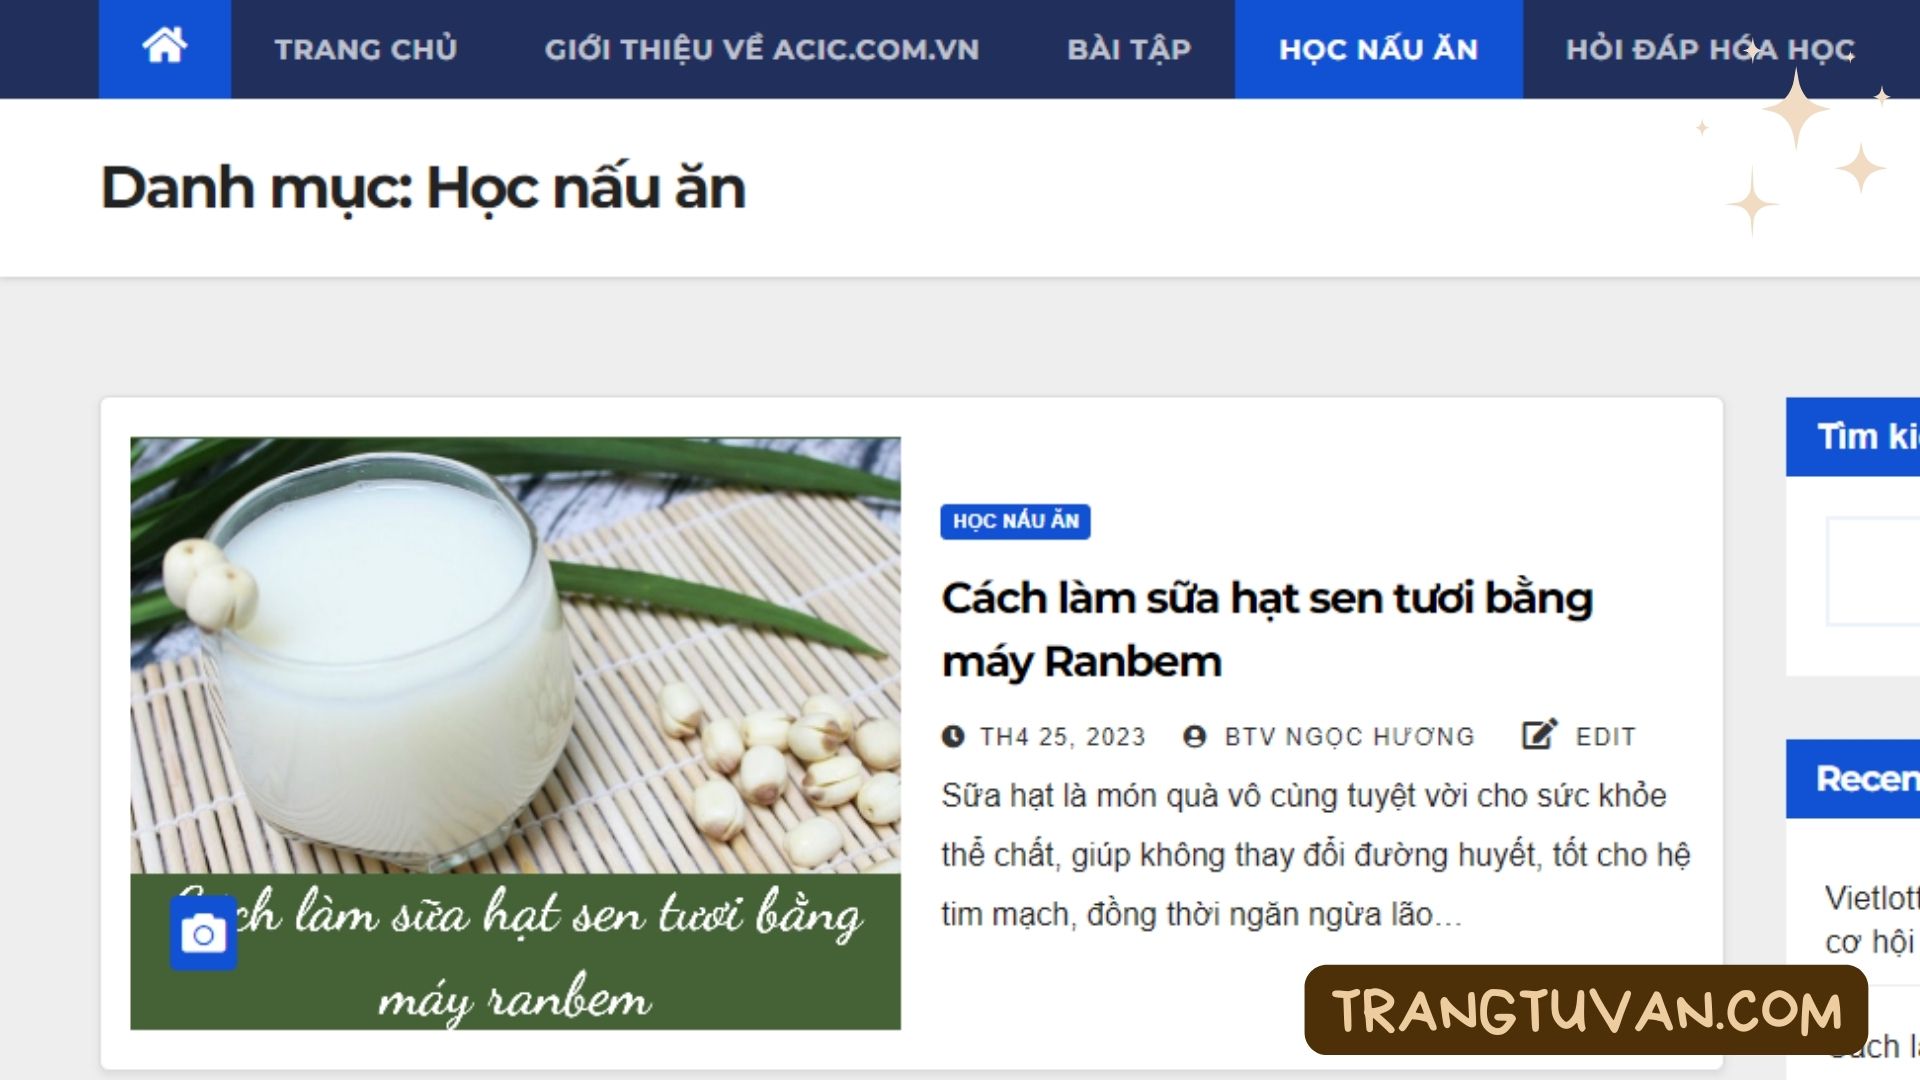 Acic.com.vn - Website chia sẻ kiến thức